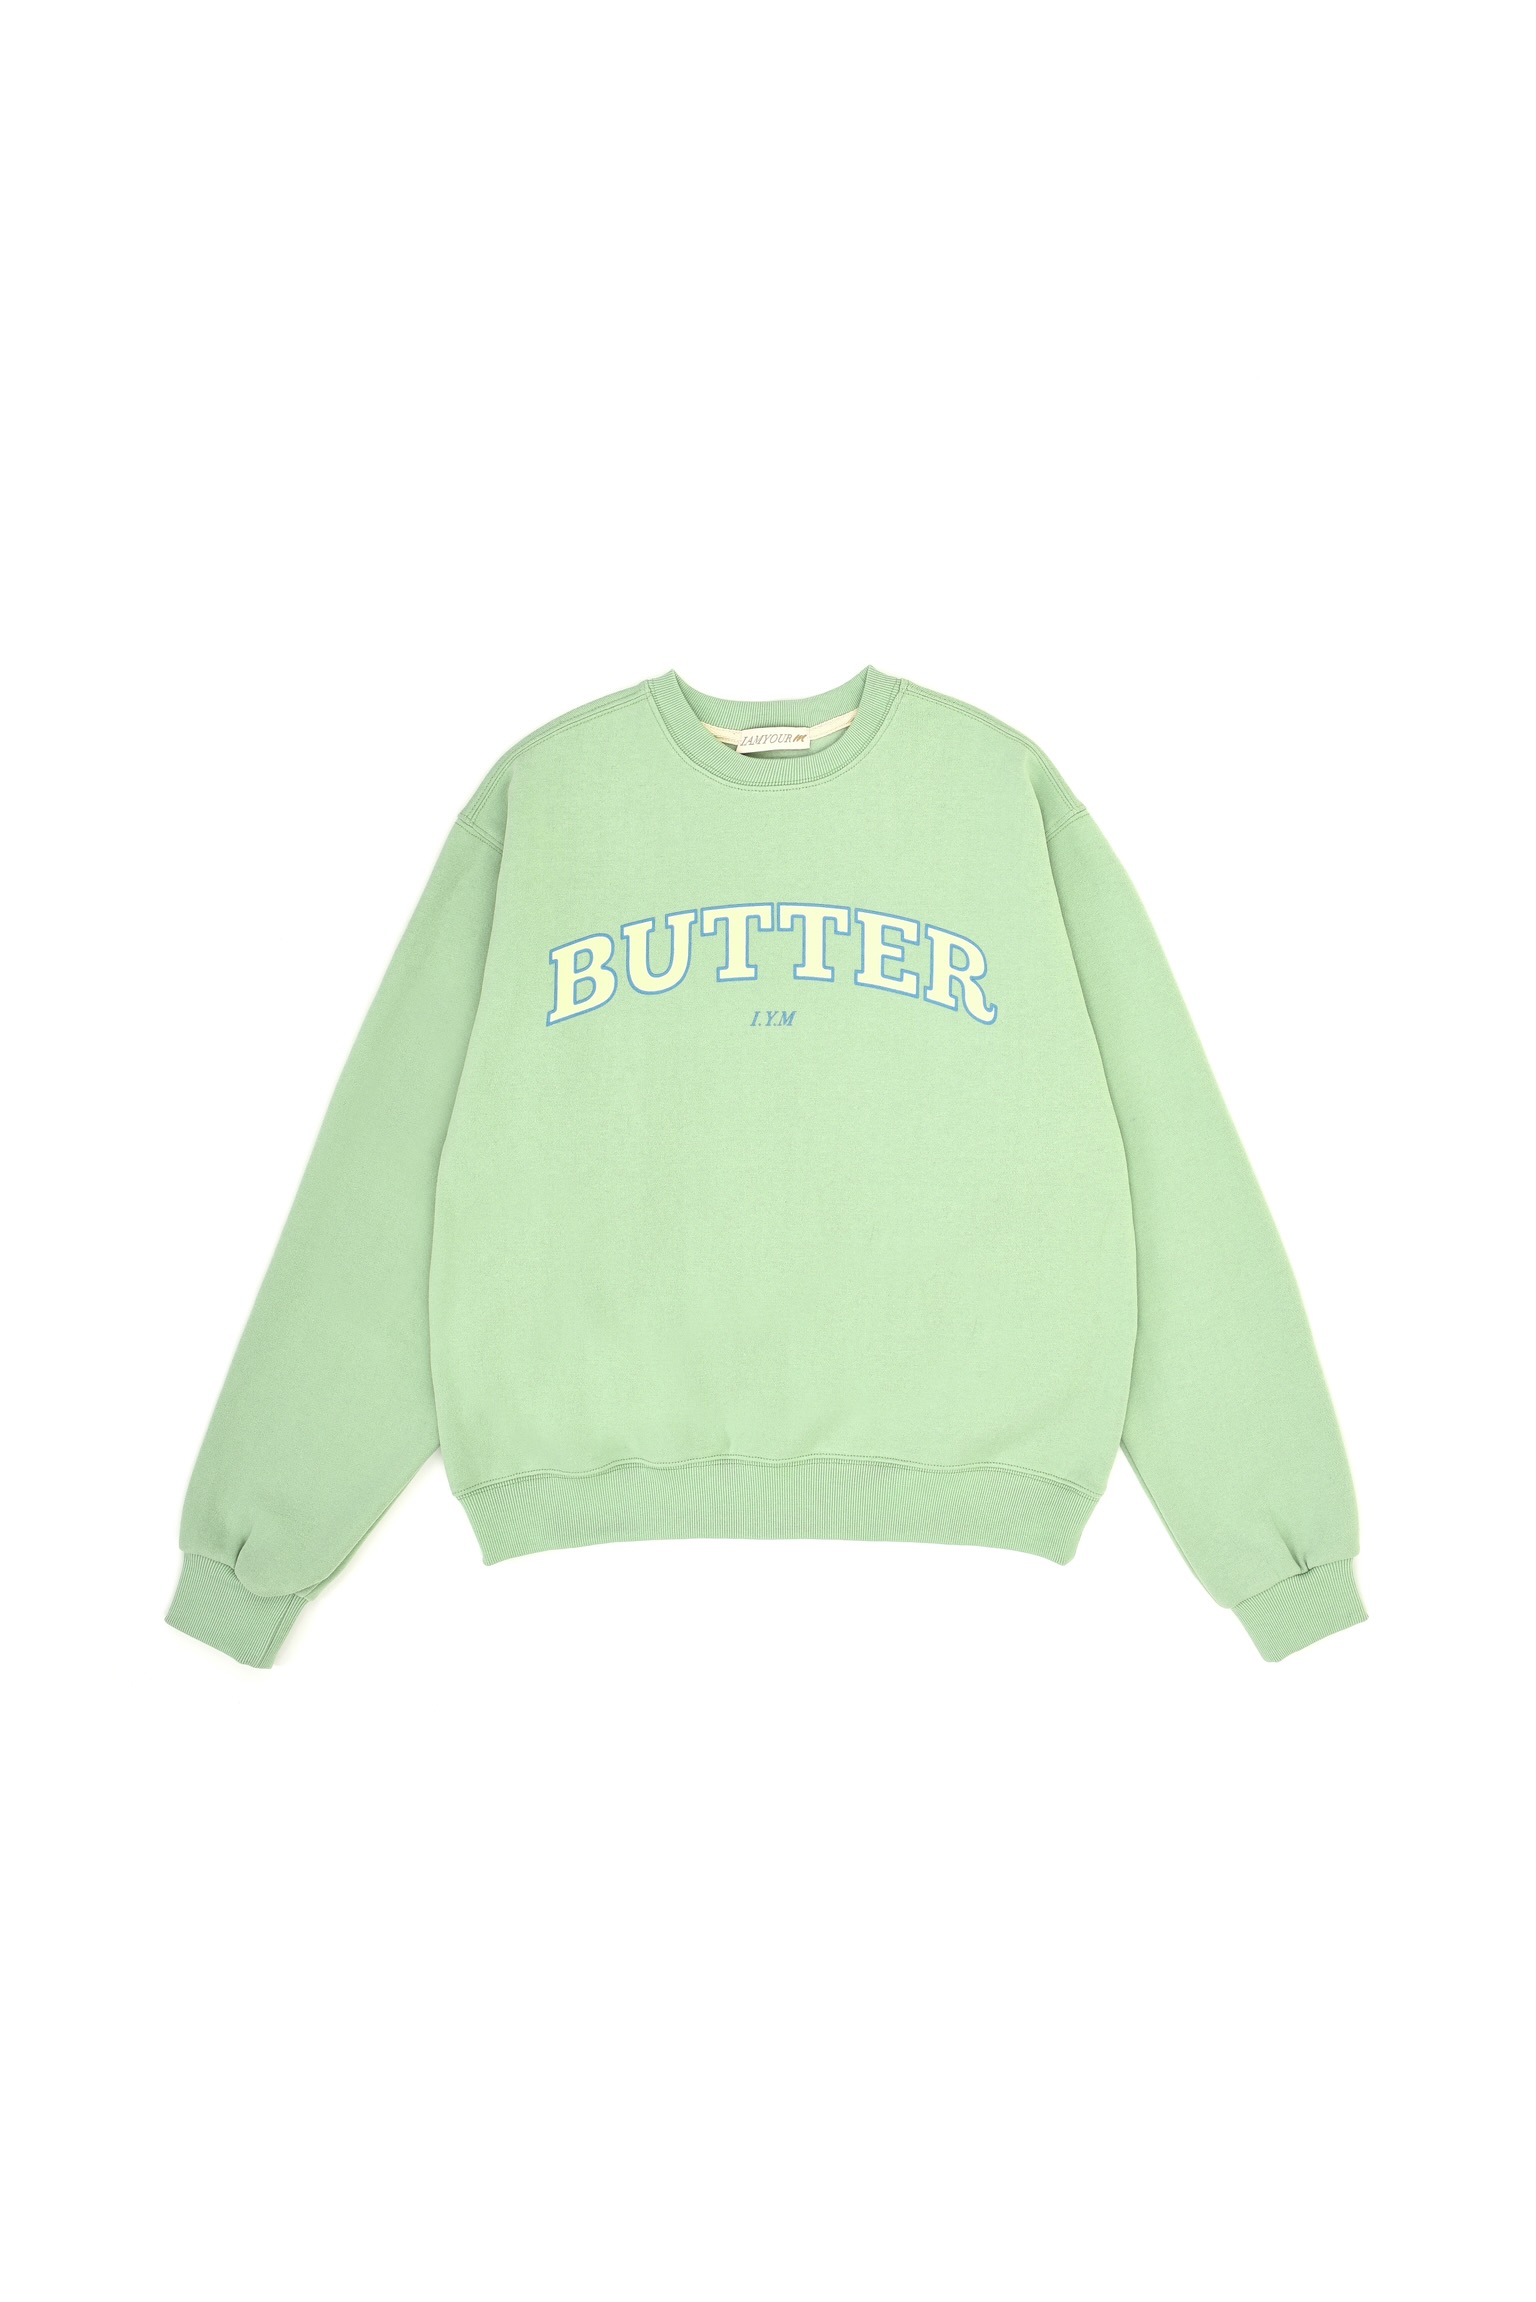 30%--Butter Sweatshirts (mint)